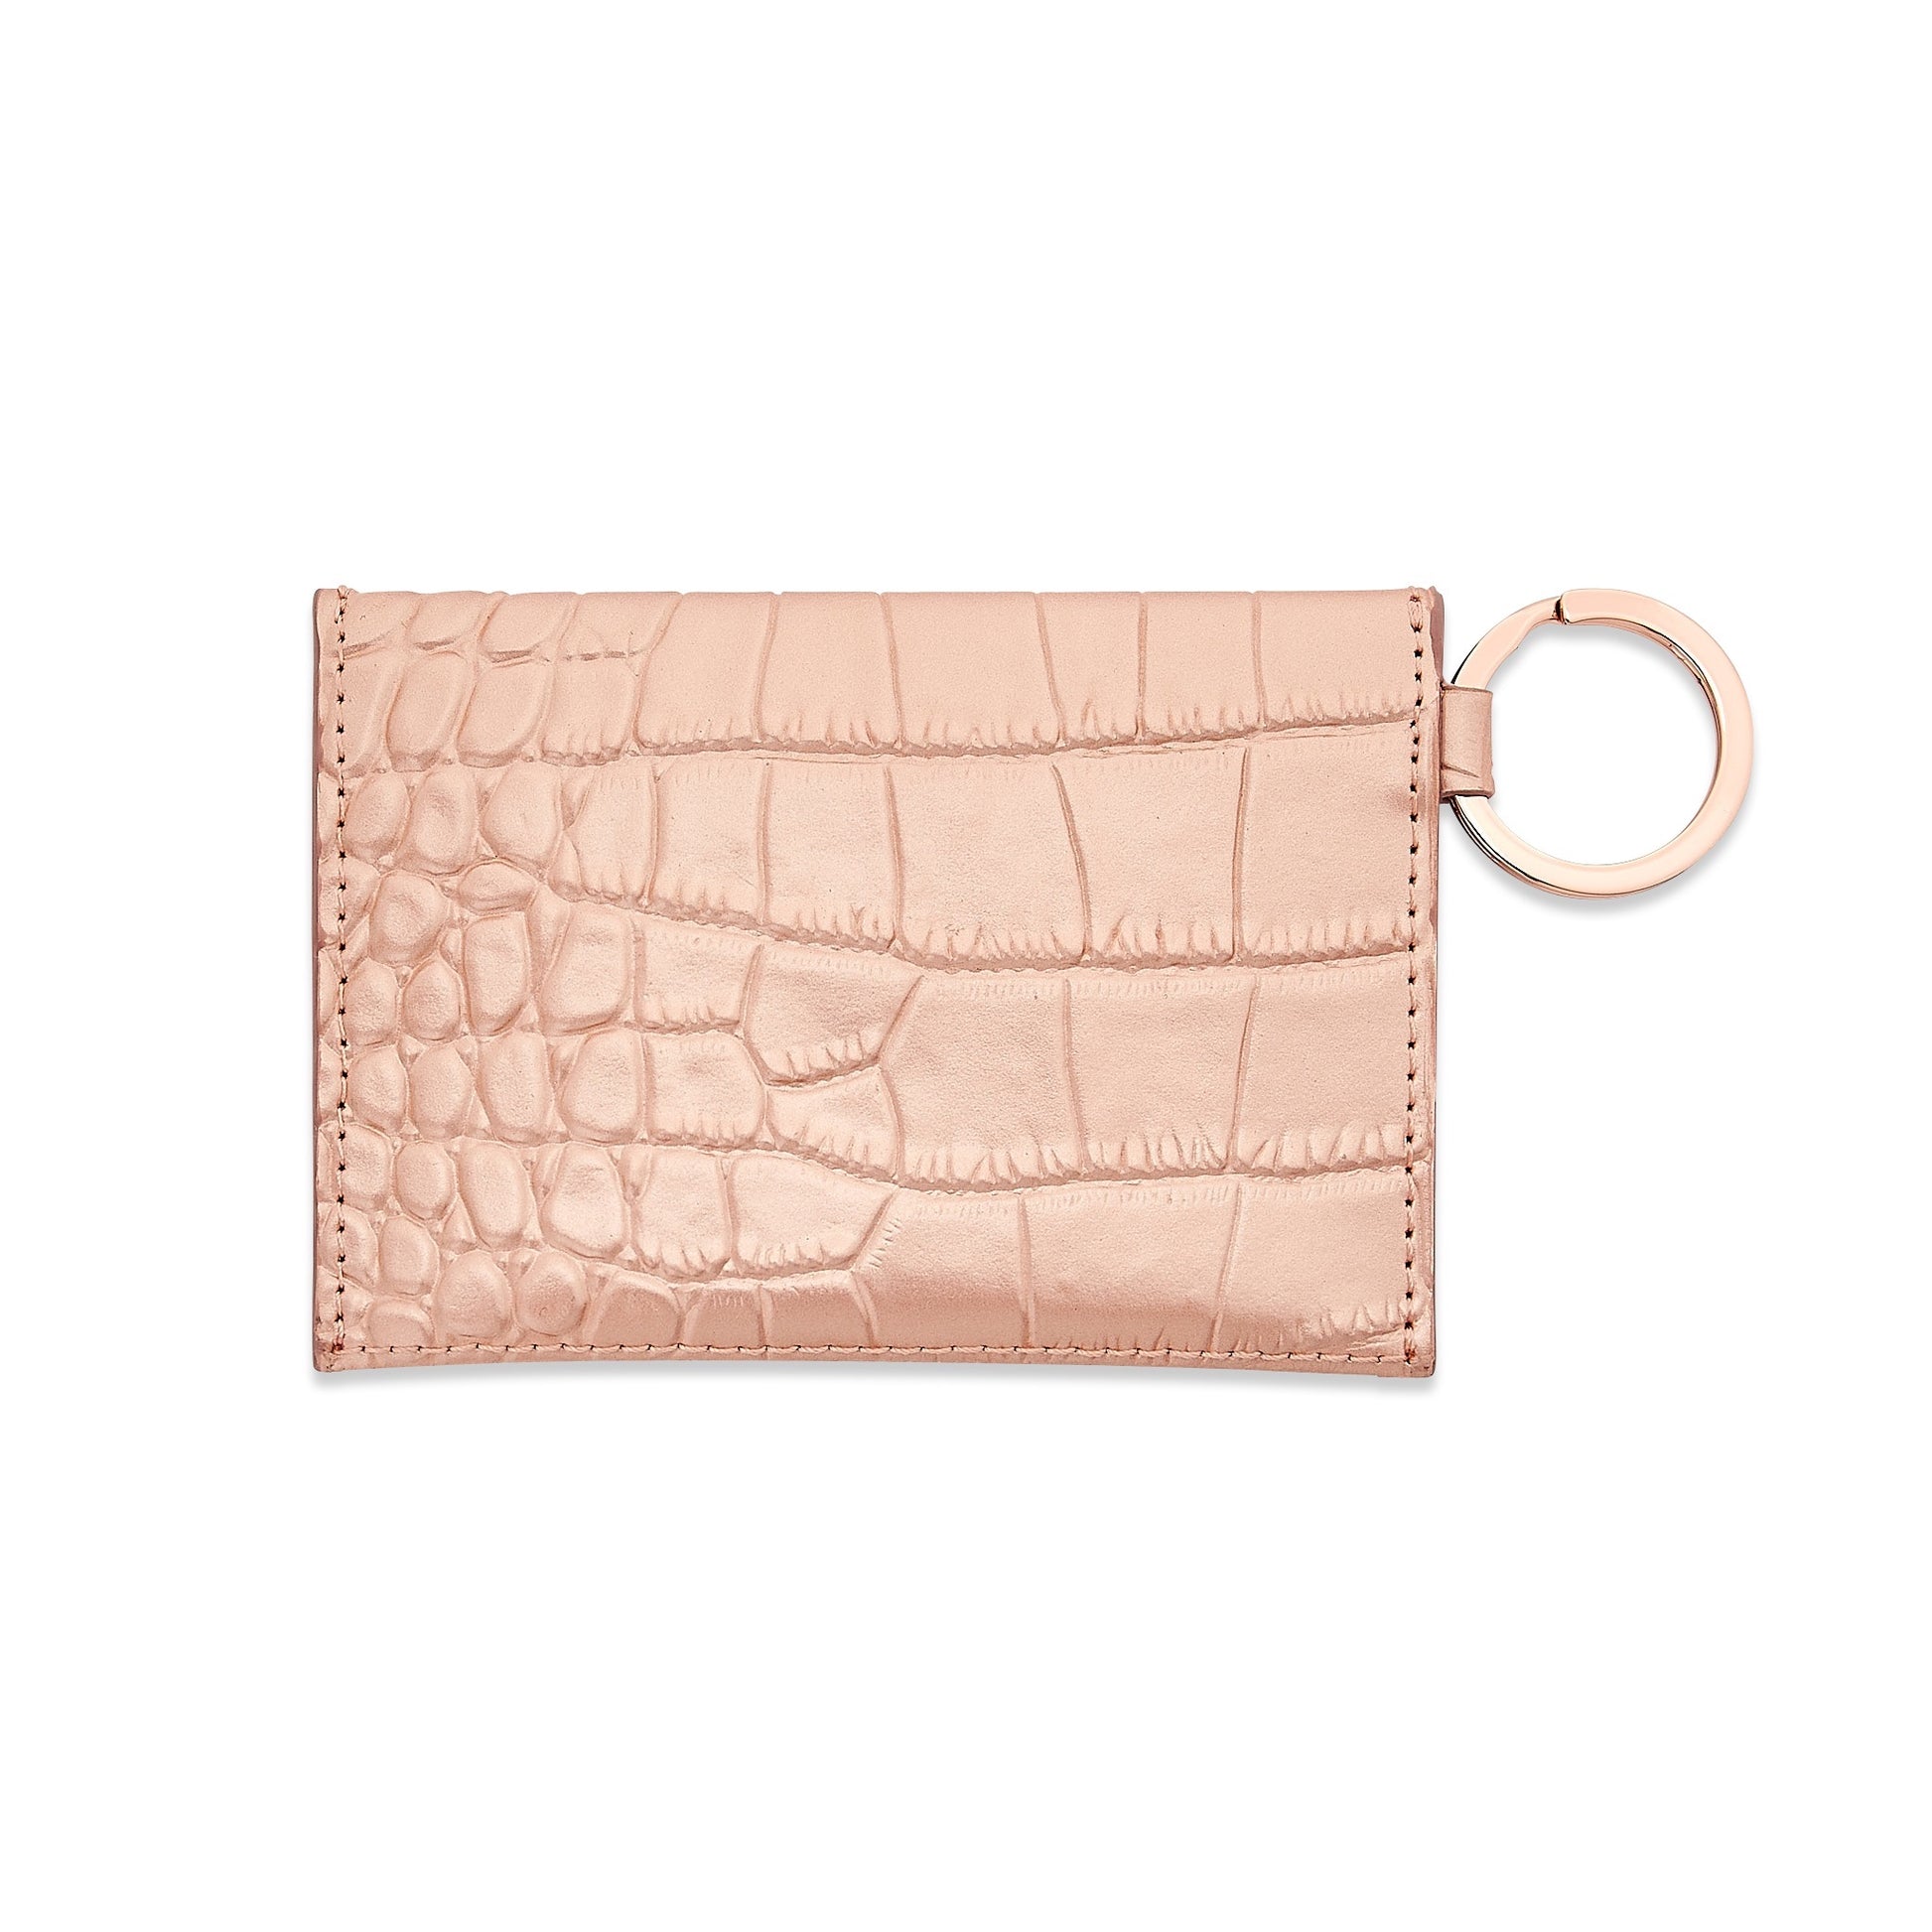 Solid Rose Gold Croc-Embossed - Mini Envelope Wallet - Oventure showing back side of wallet